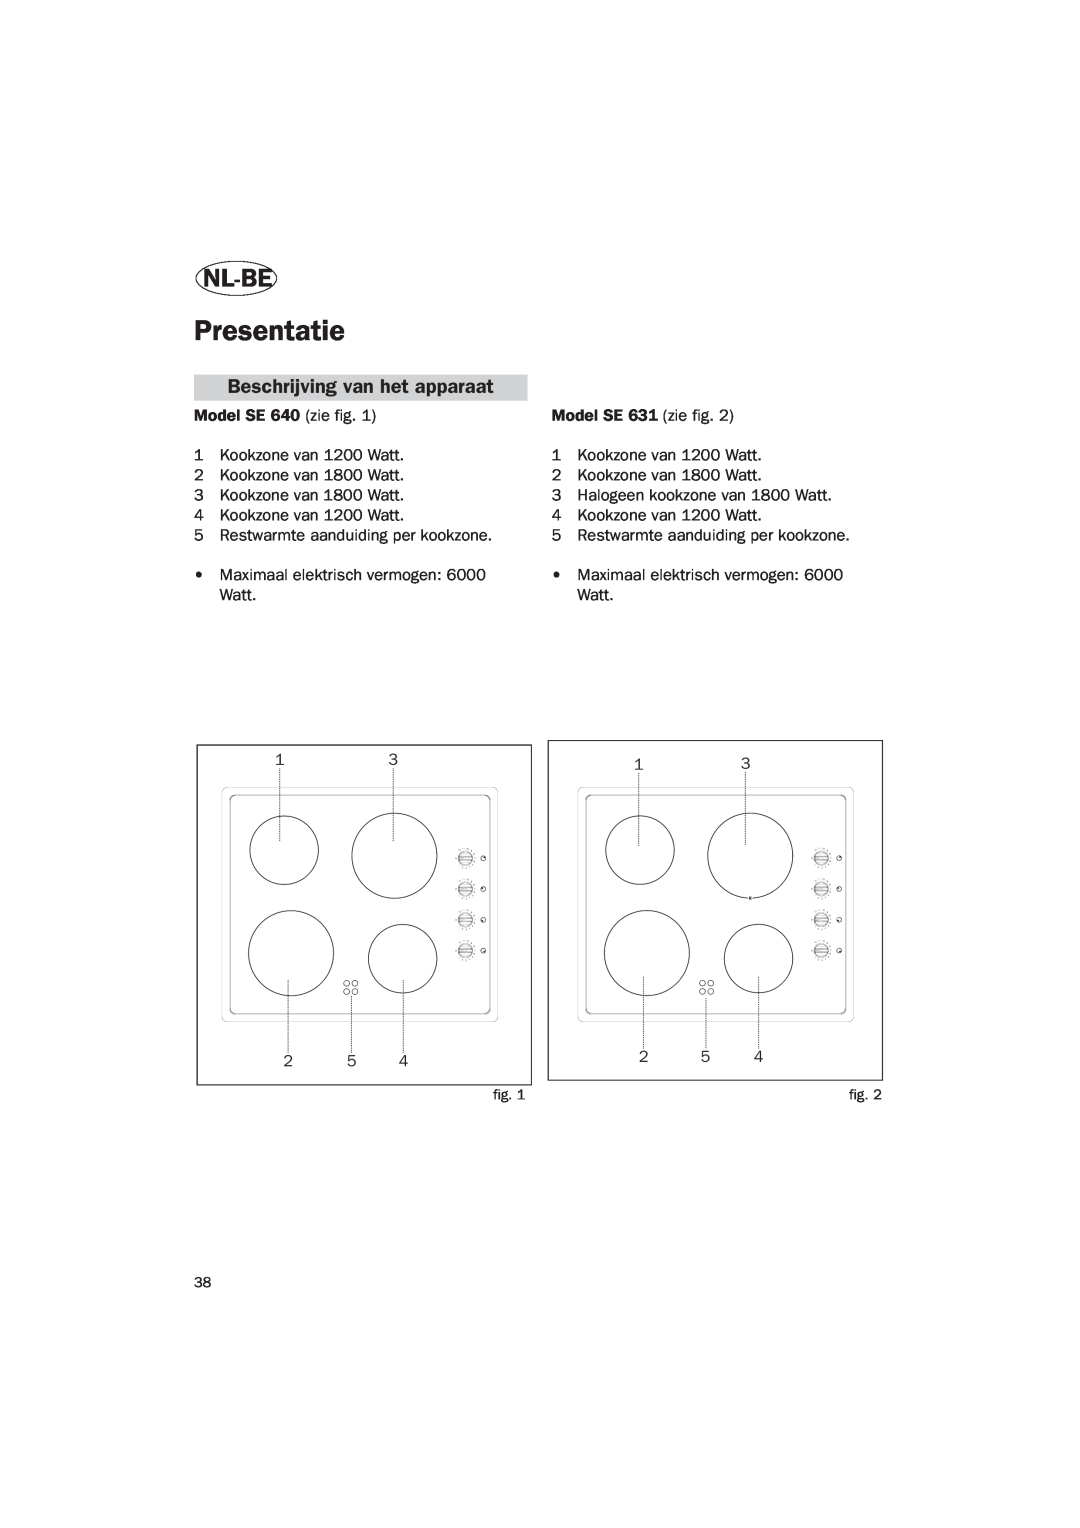 Smeg Vitroceramic manual Presentatie, Nl-Be, Beschrijving van het apparaat 